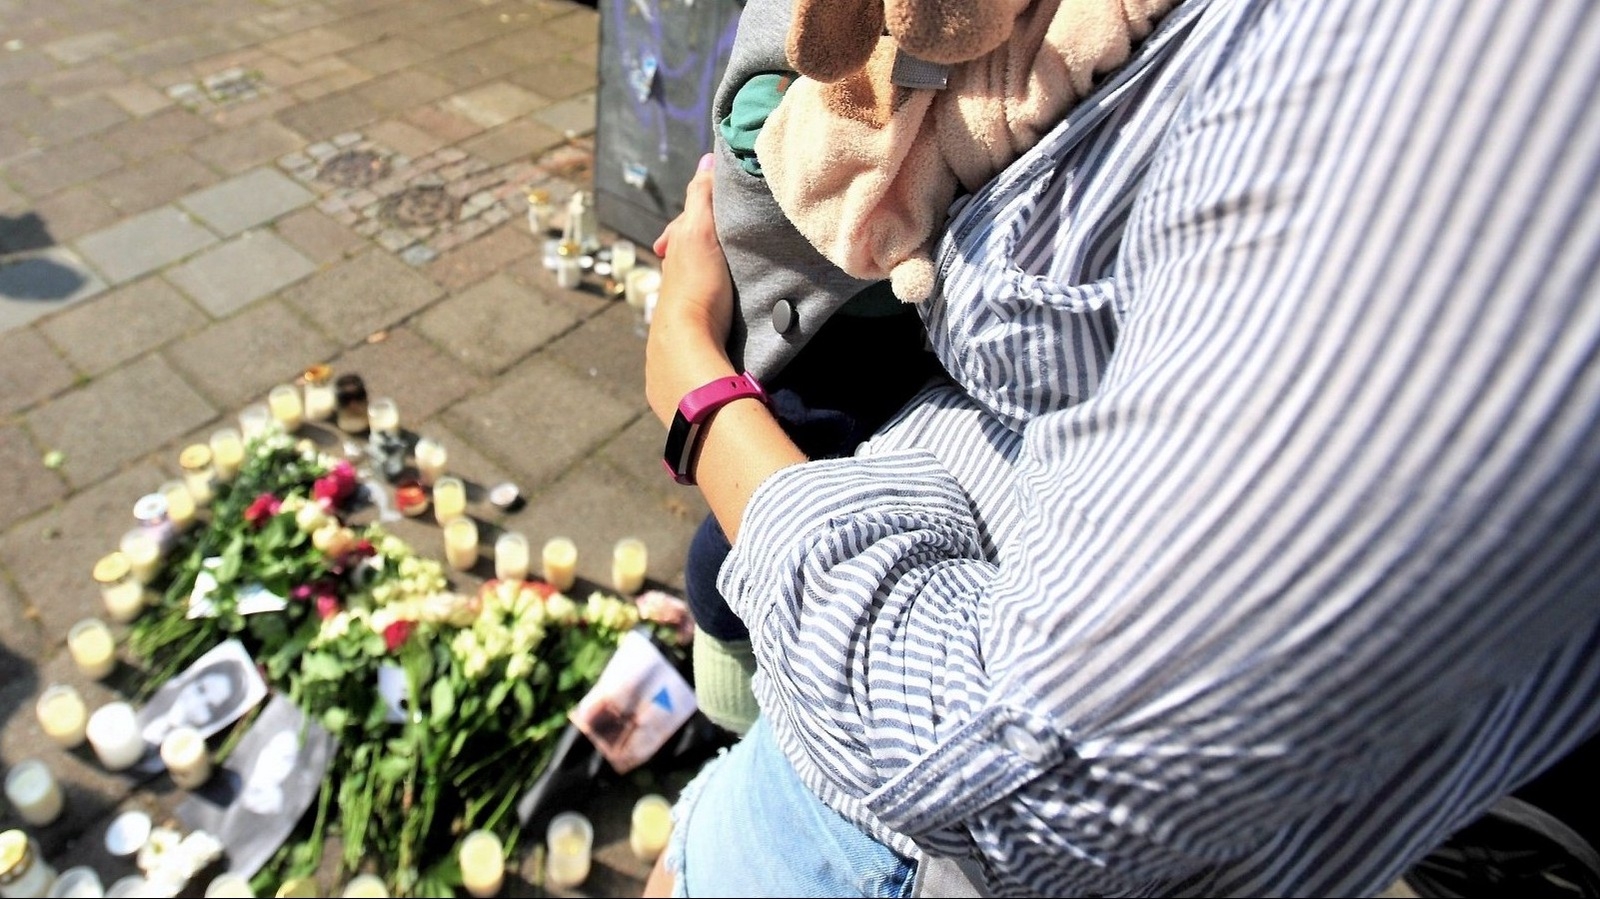 Mordet på Sergels väg mord väckte sorg och vrede hos Malmöborna. Många besökte mordplatsen dagen efter dödsskjutningen. Foto: Stefan Persson